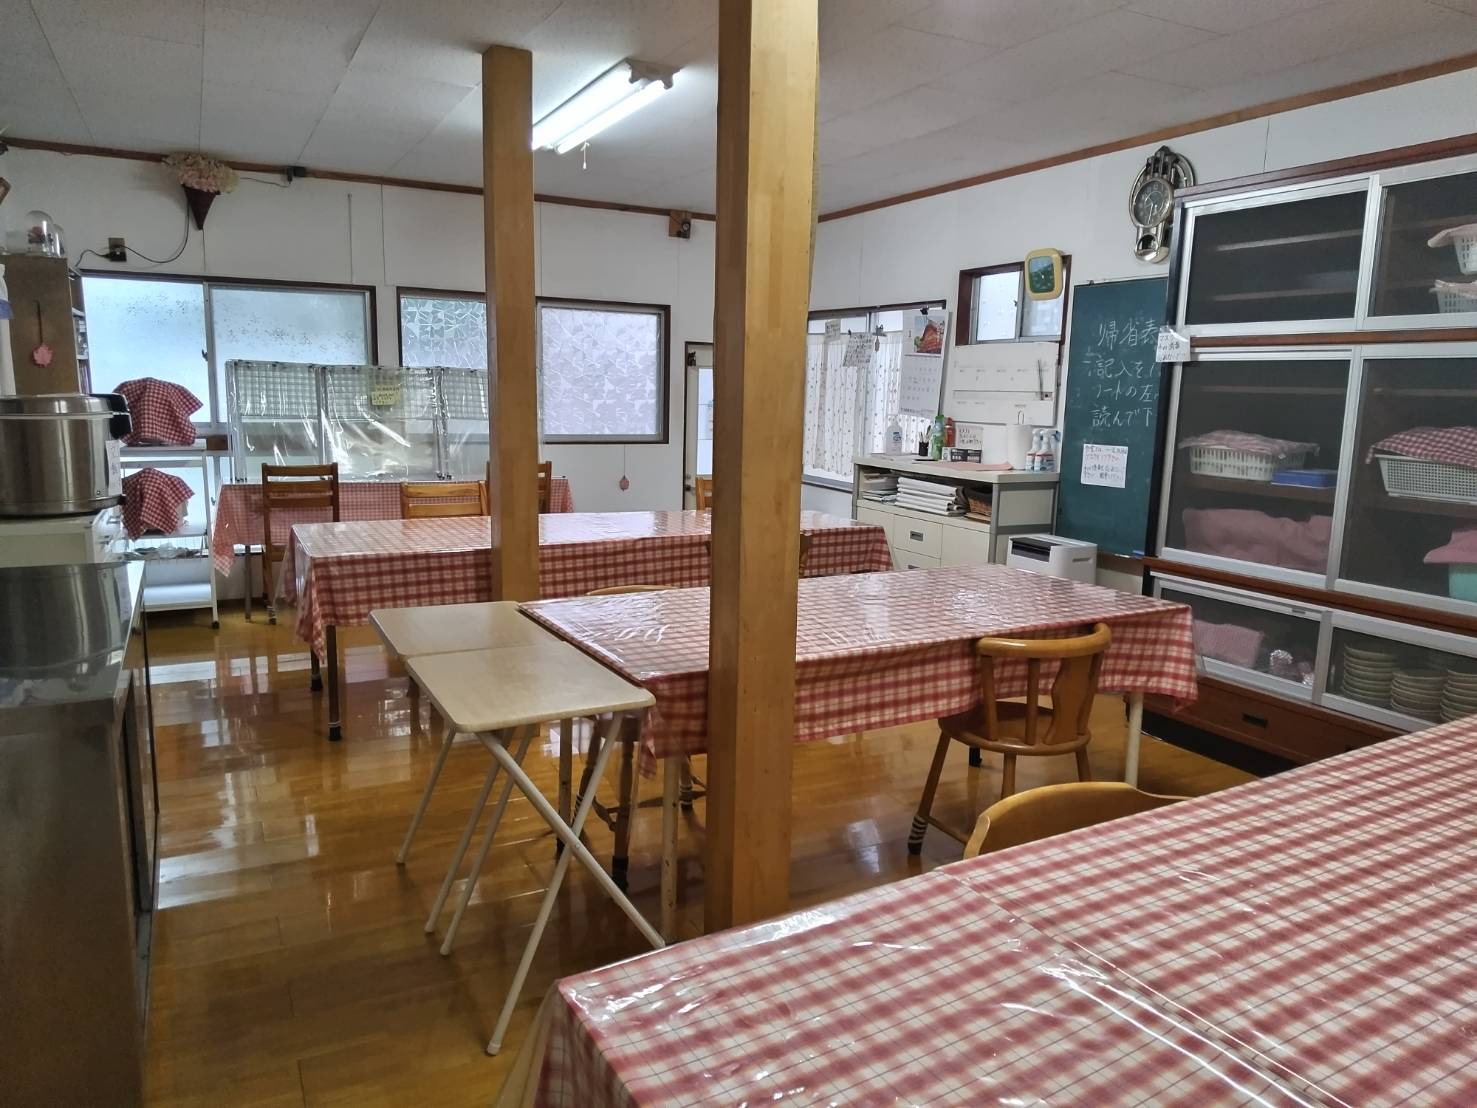 食堂は24畳の広さがありゆったりとした空間です。清潔で、明るく風通しもよく、楽しい食事ができます。